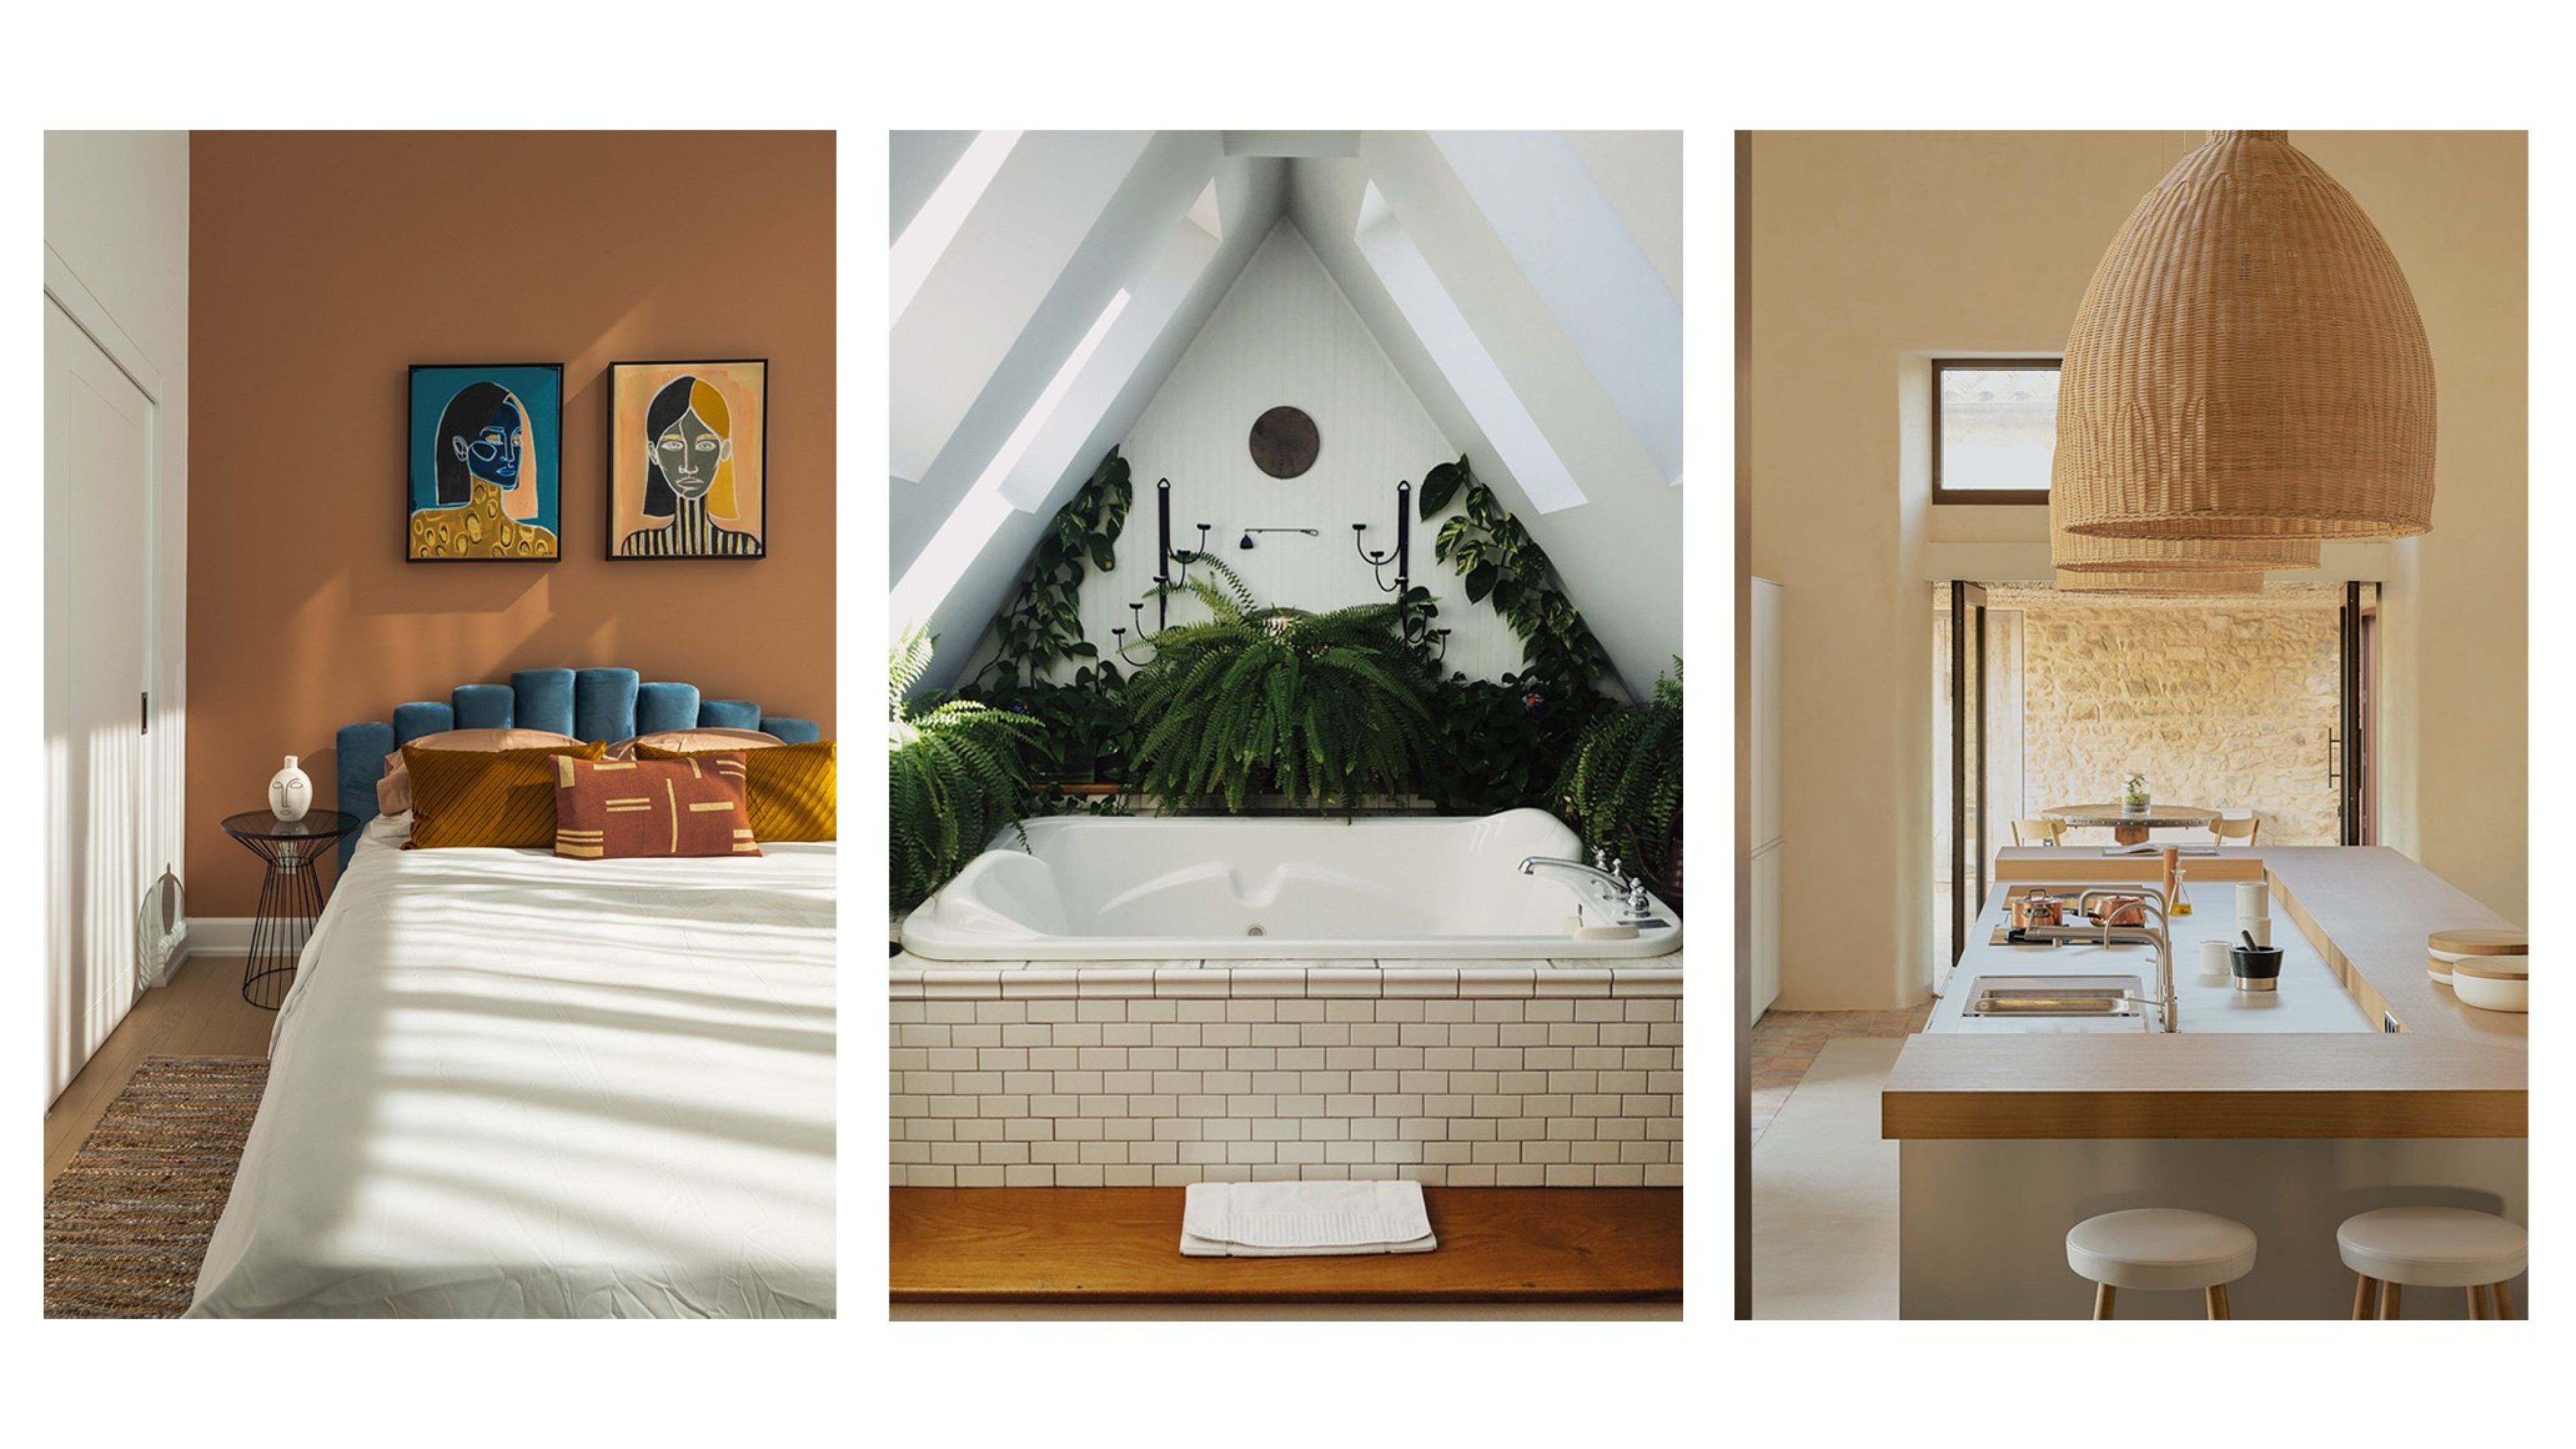 Eine grüne Badewanne oder ein ferien-inspiriertes Küchendesign, wir zeigen verschiedene Wohntypen